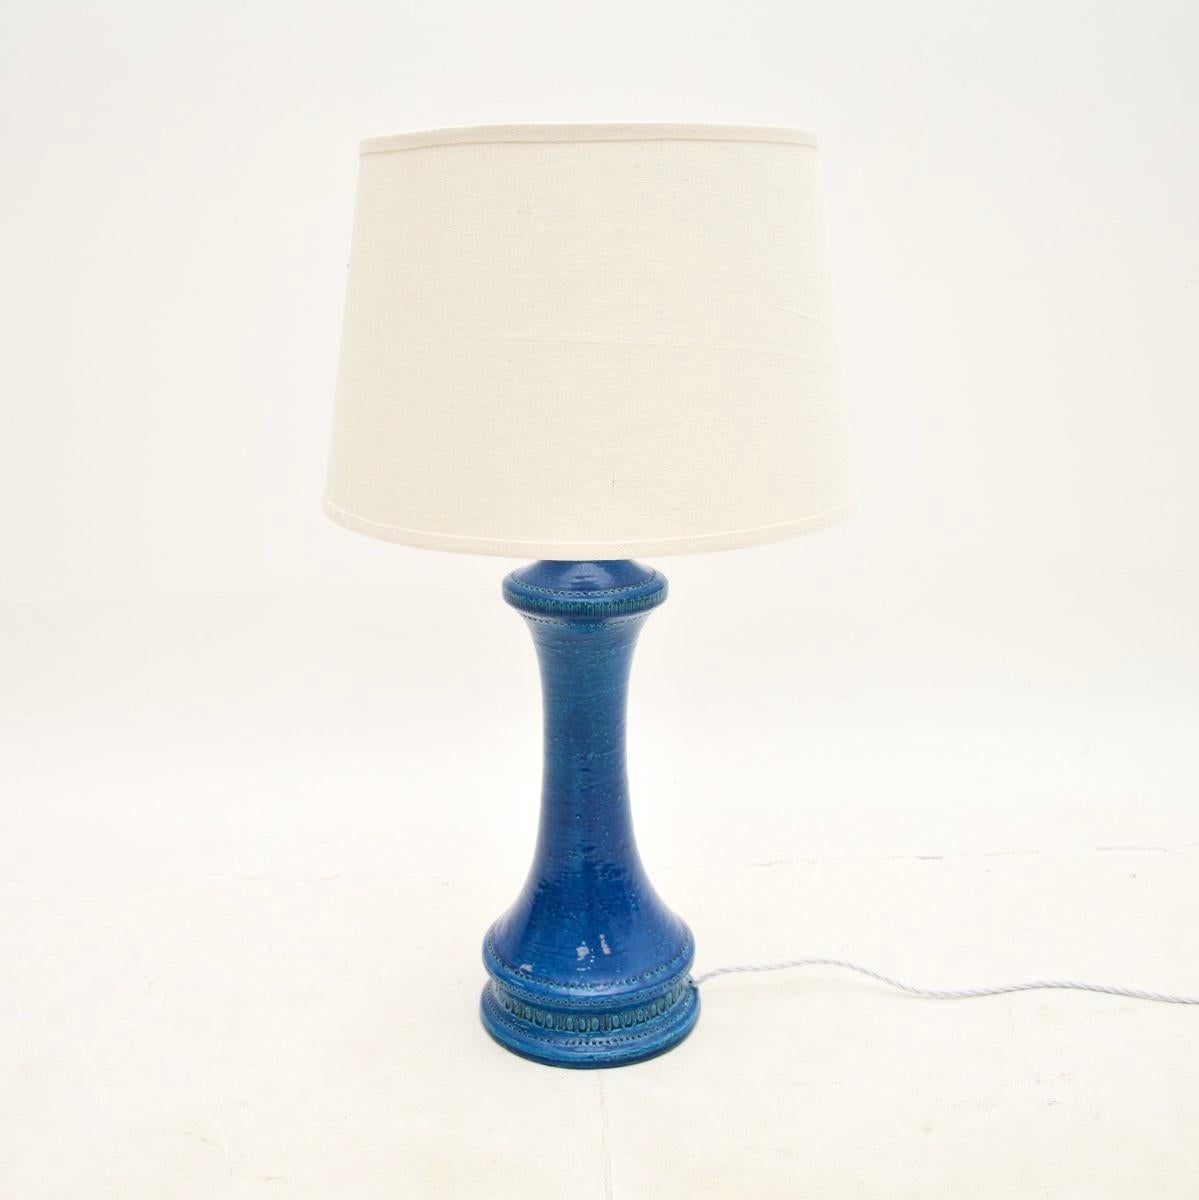 Eine wunderbare italienische Keramik-Tischlampe von Aldo Londi für Bitossi. Sie wurde in Italien hergestellt und stammt etwa aus den 1960er Jahren.

Es ist in wunderschönem Rimini-Blau gehalten, mit einem hübschen Design und herrlichen Mustern. Sie